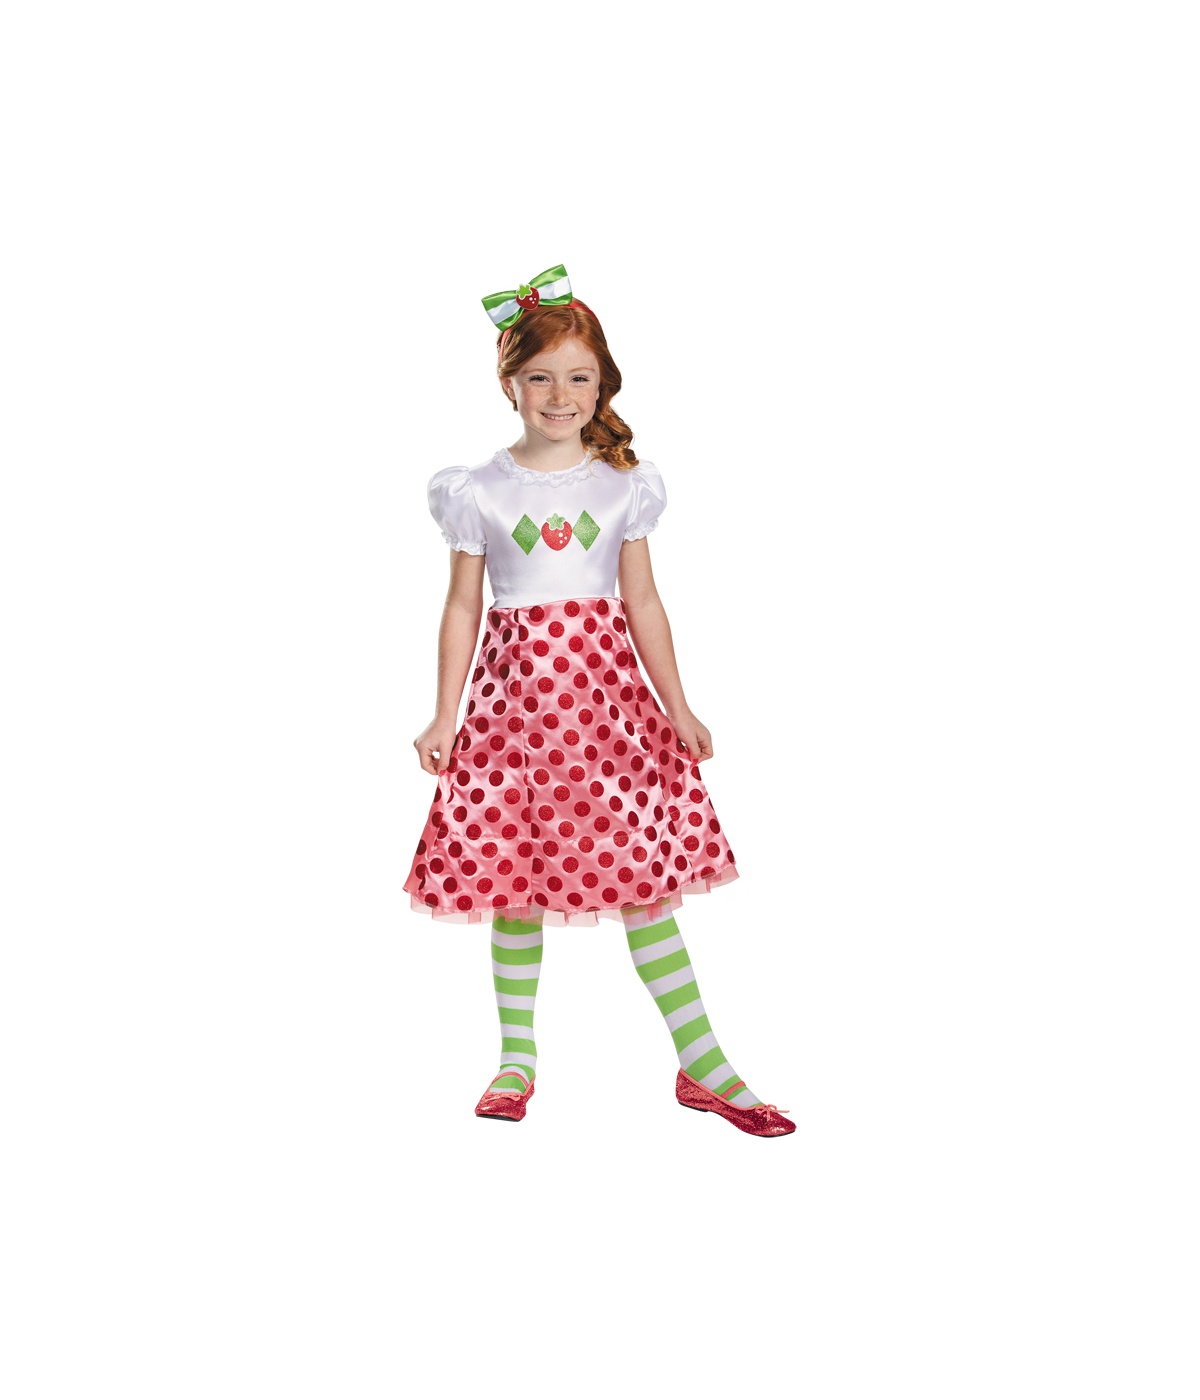  Girls Strawberry Shortcake Baby Costume